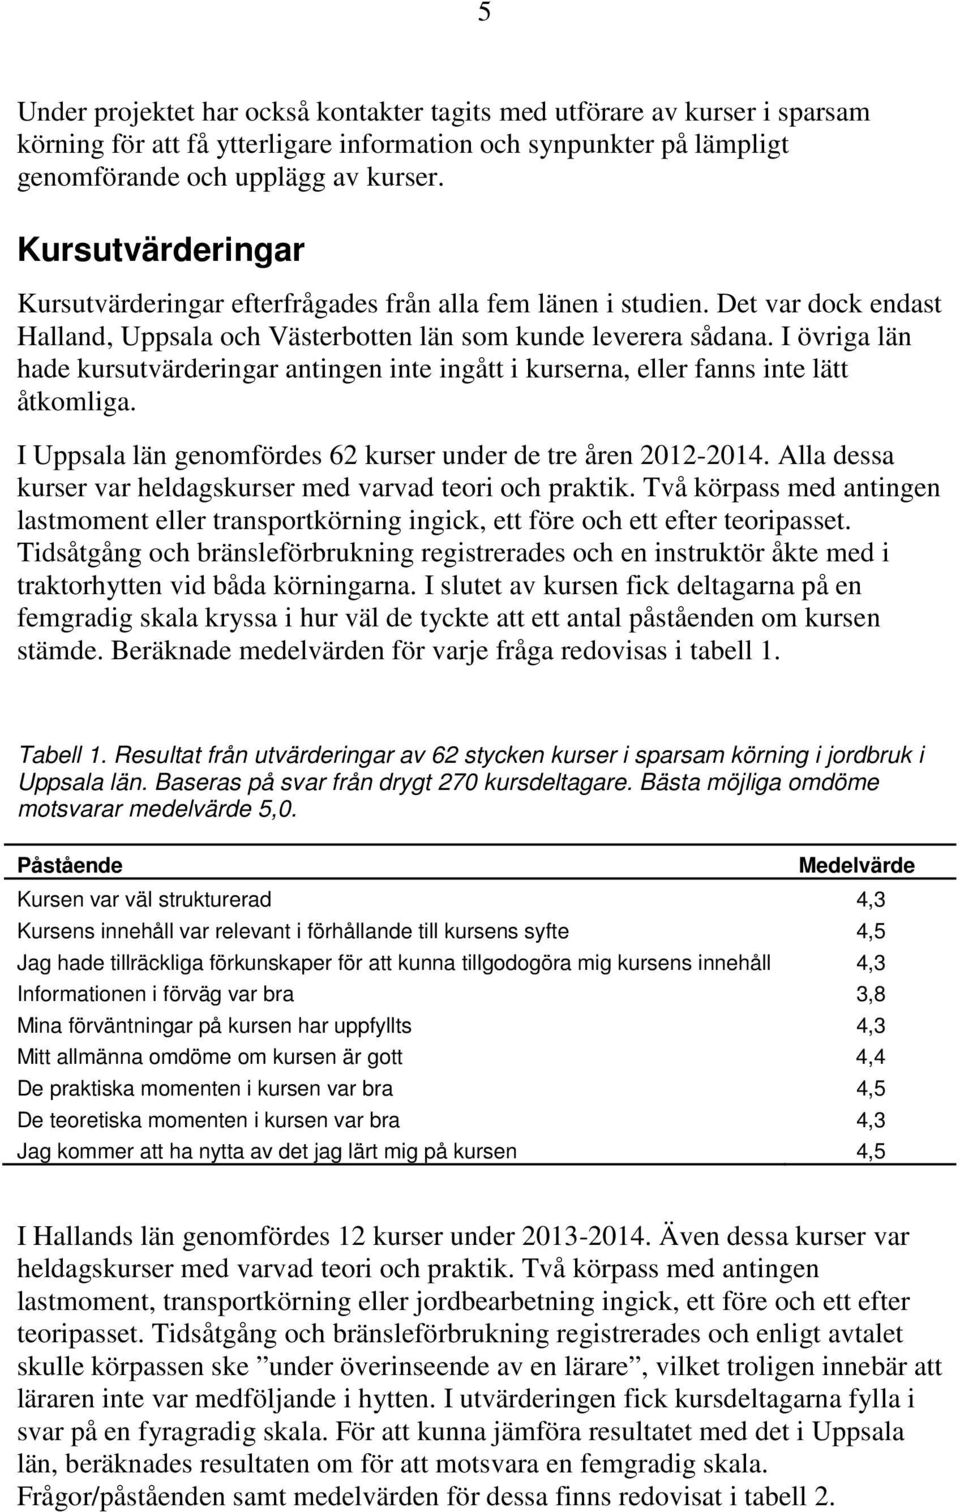 I övriga län hade kursutvärderingar antingen inte ingått i kurserna, eller fanns inte lätt åtkomliga. I Uppsala län genomfördes 62 kurser under de tre åren 2012-2014.